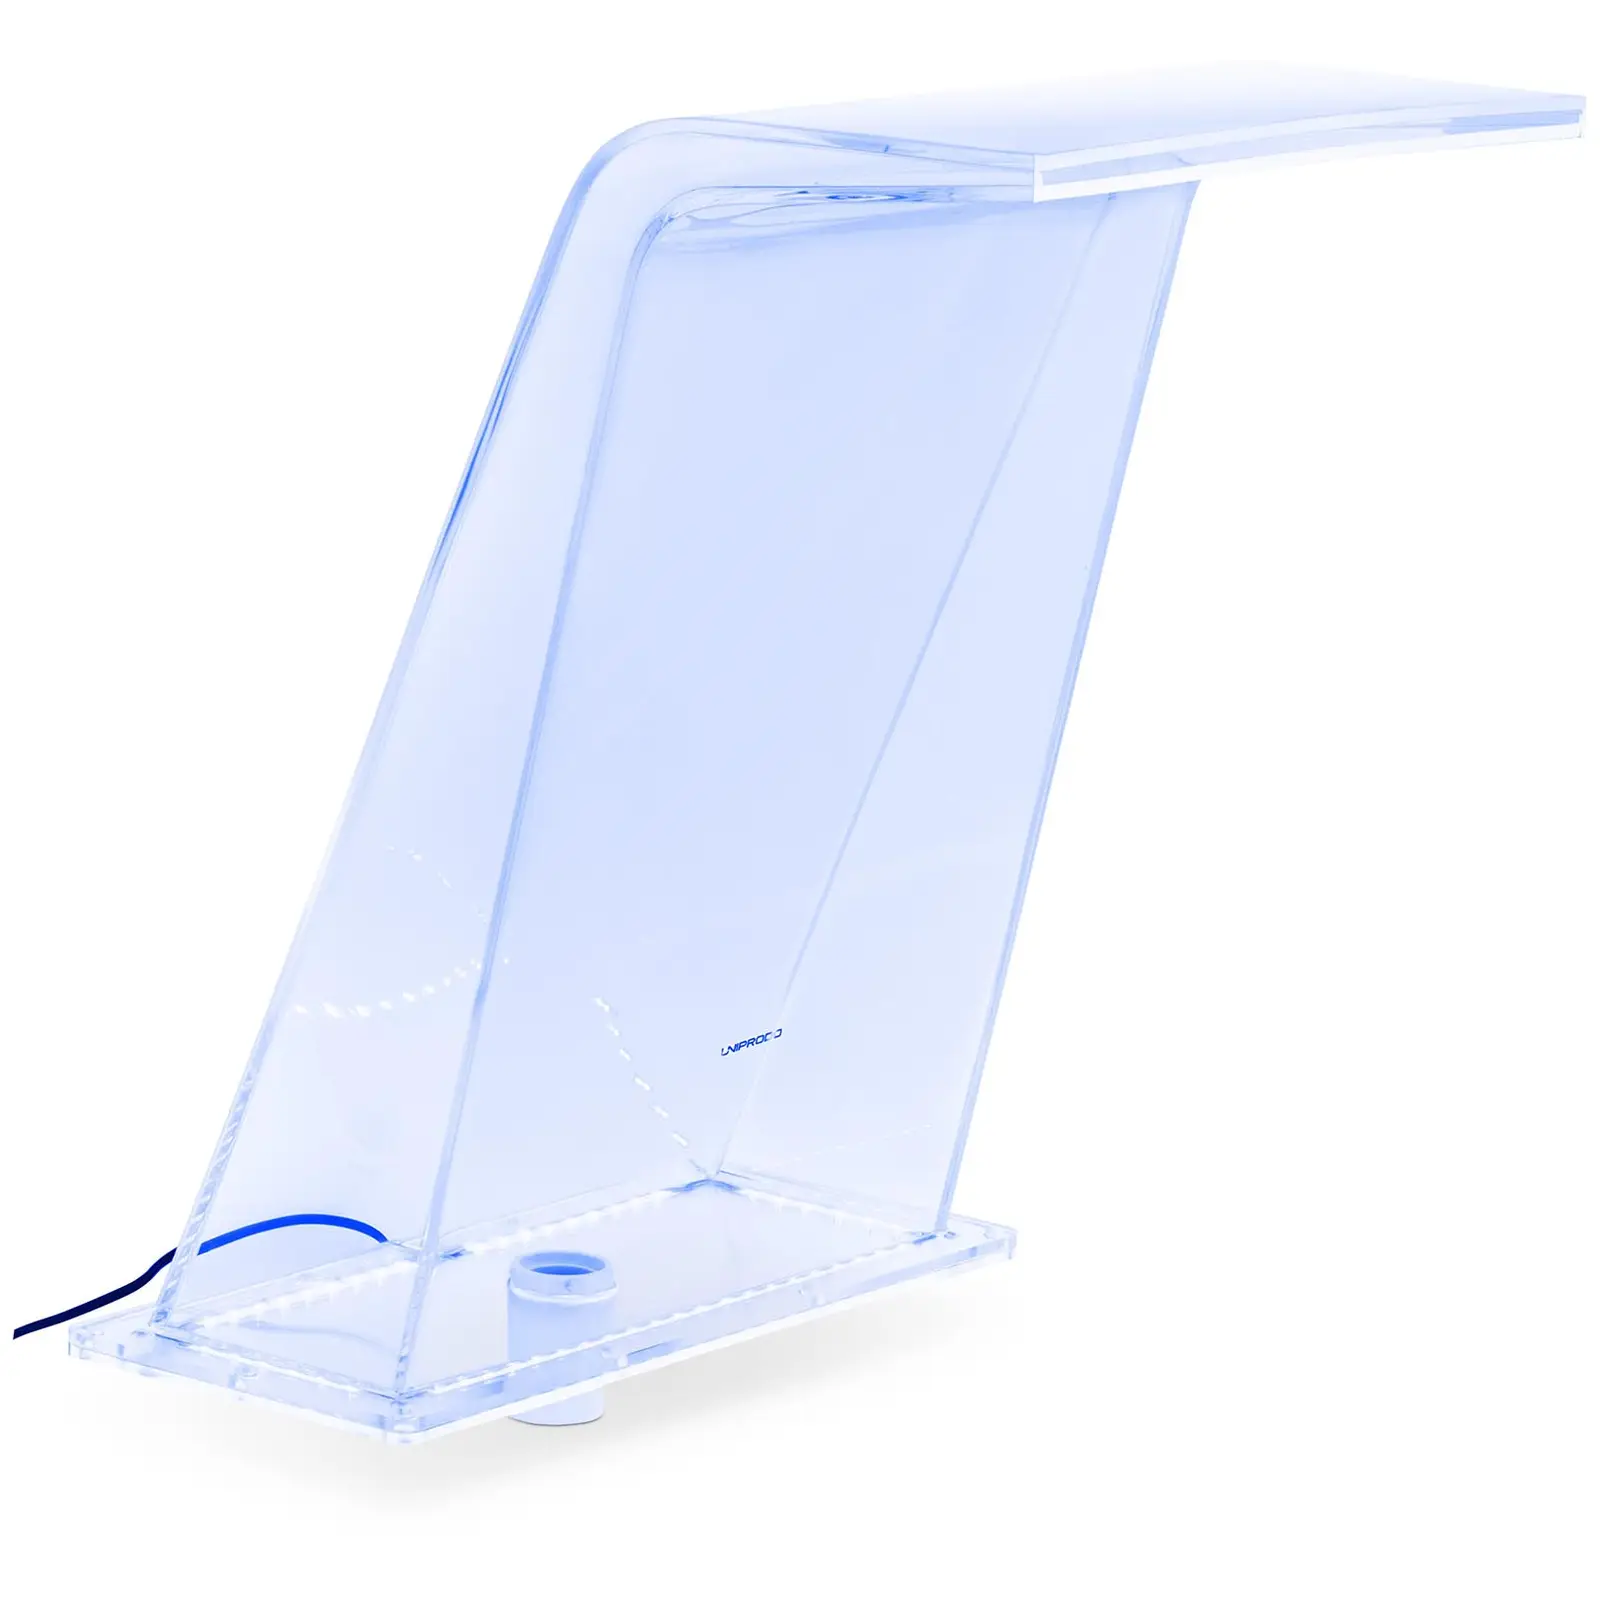 Medence szökőkút - 45 cm - LED világítás - kék/fehér - 395 mm-es vízkivezető nyílás